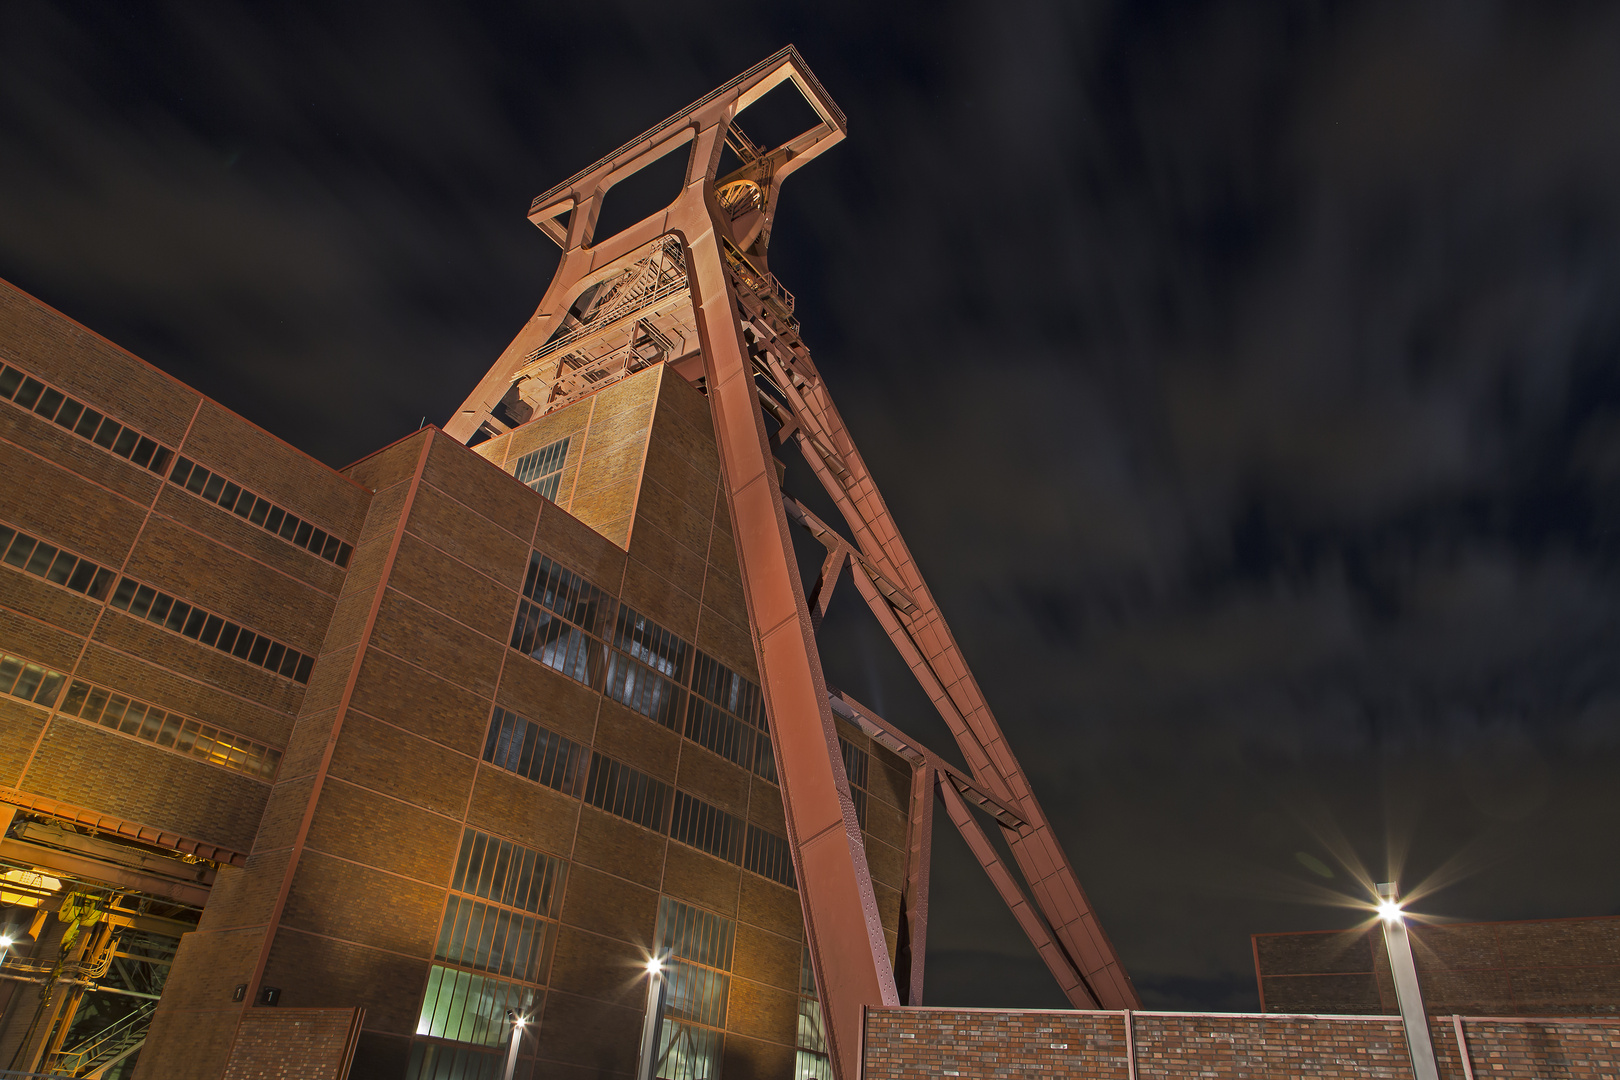 Förderturm Zollverein